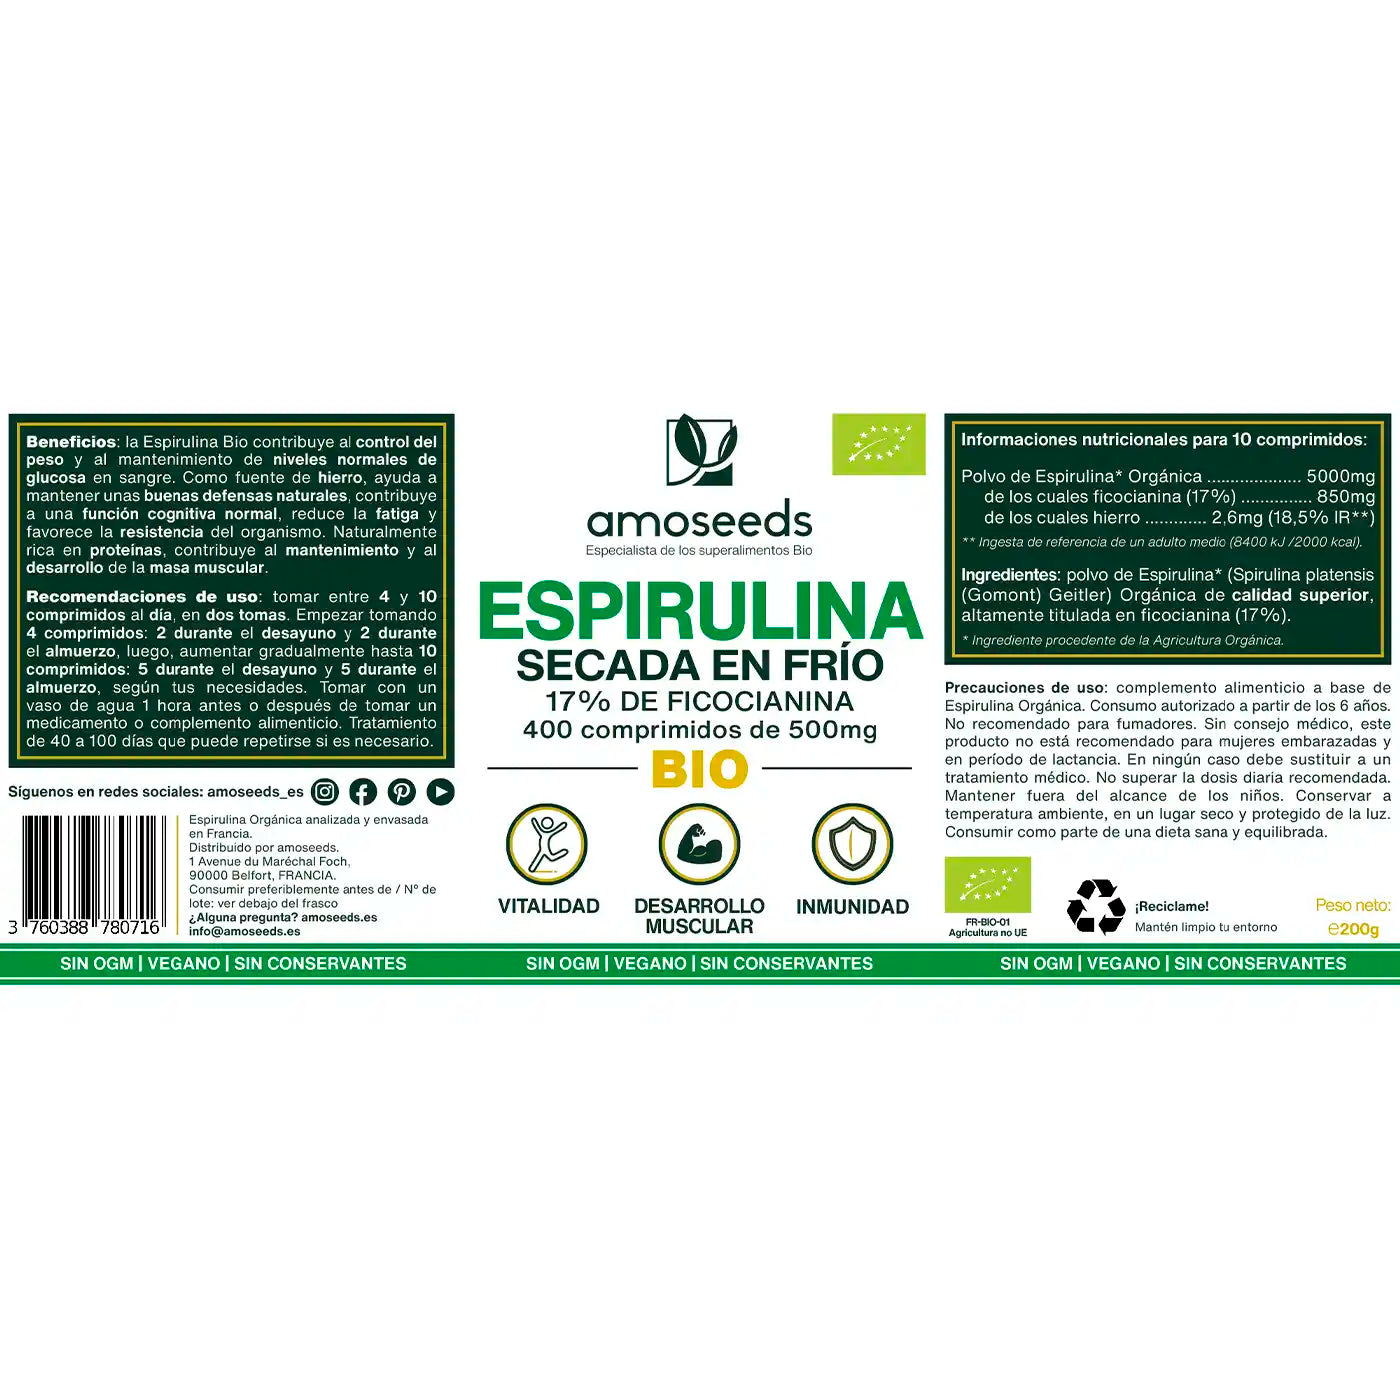 Espirulina Bio, amoseeds especialista de los superalimentos bio